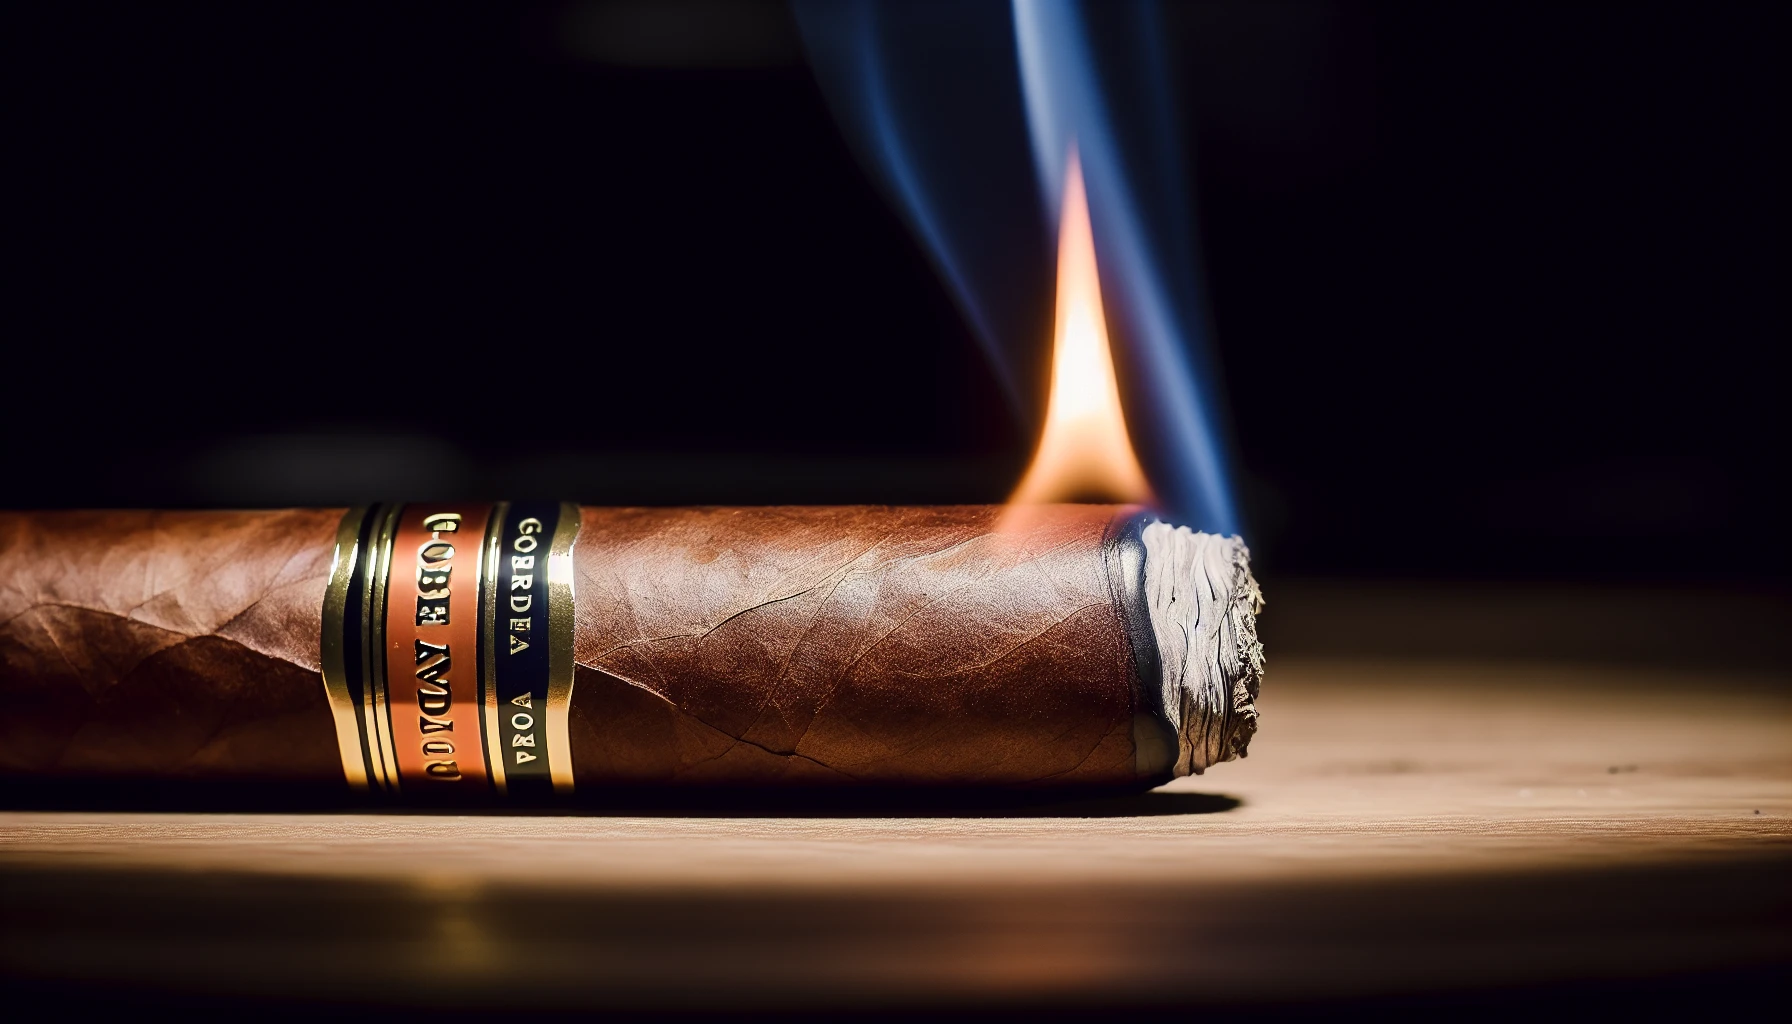 Even burn line of a lit New World Gobernador Toro cigar